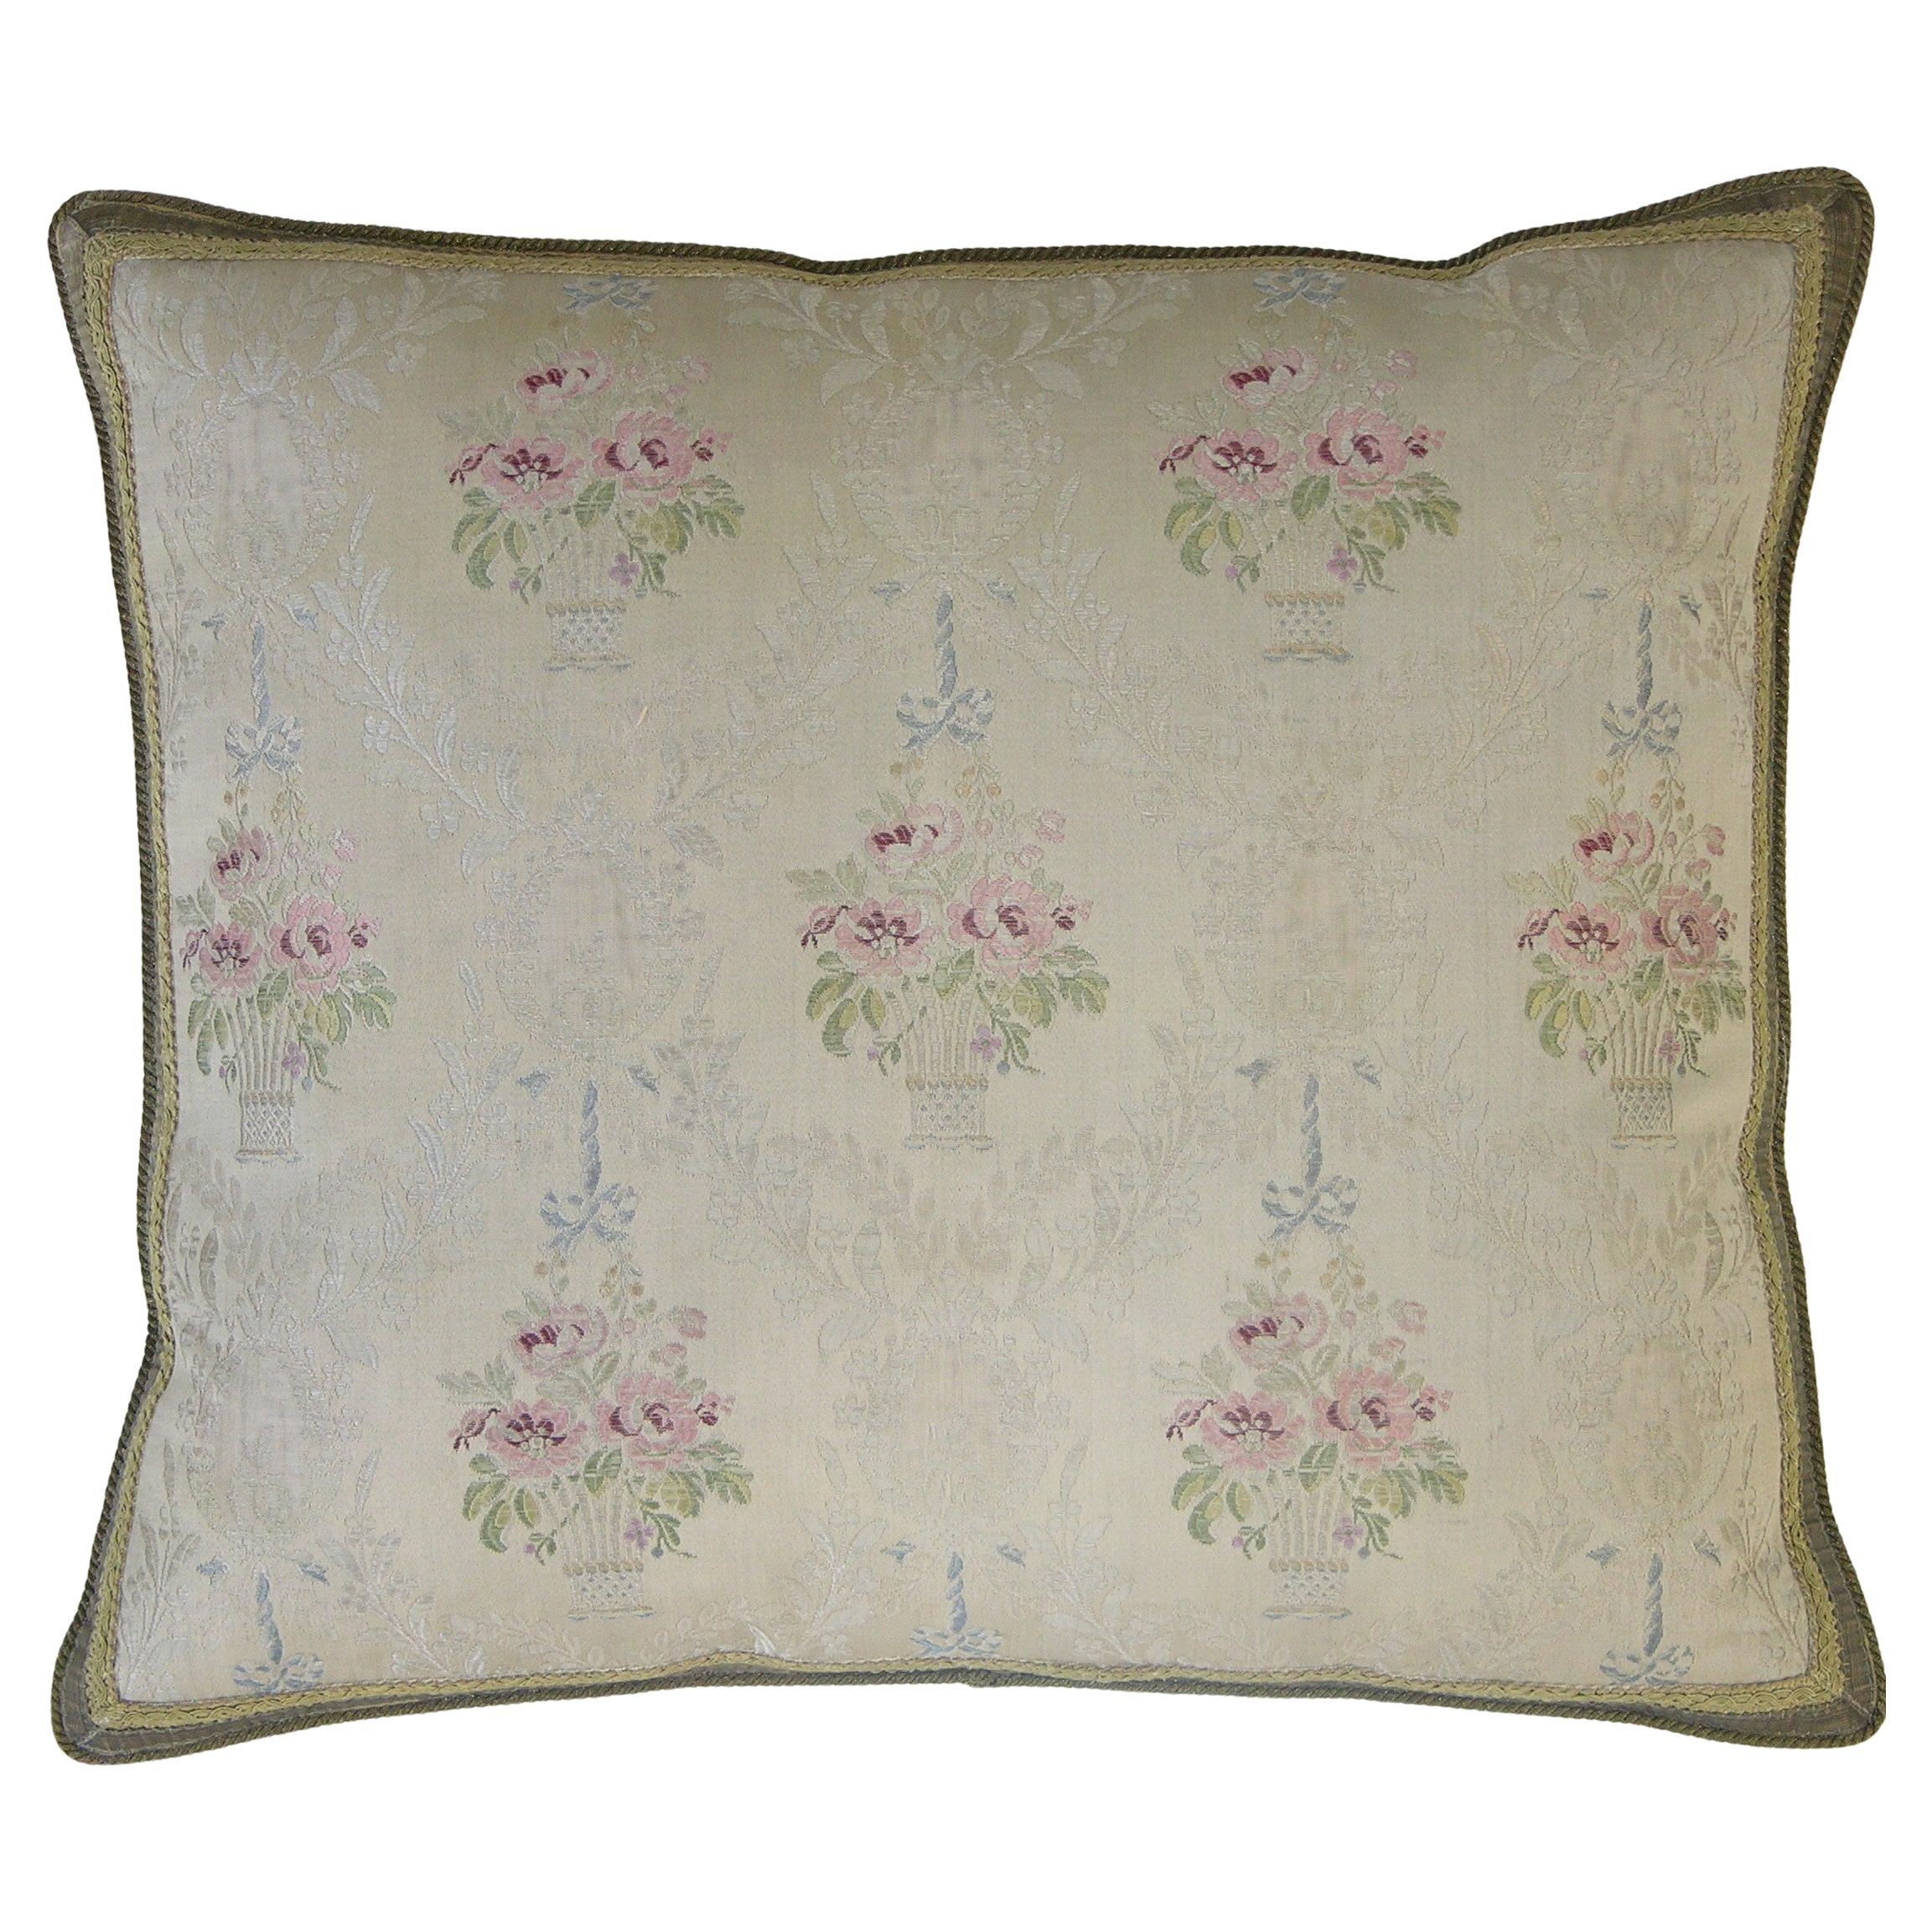 Circa 1860 Antique French Textile Pillow